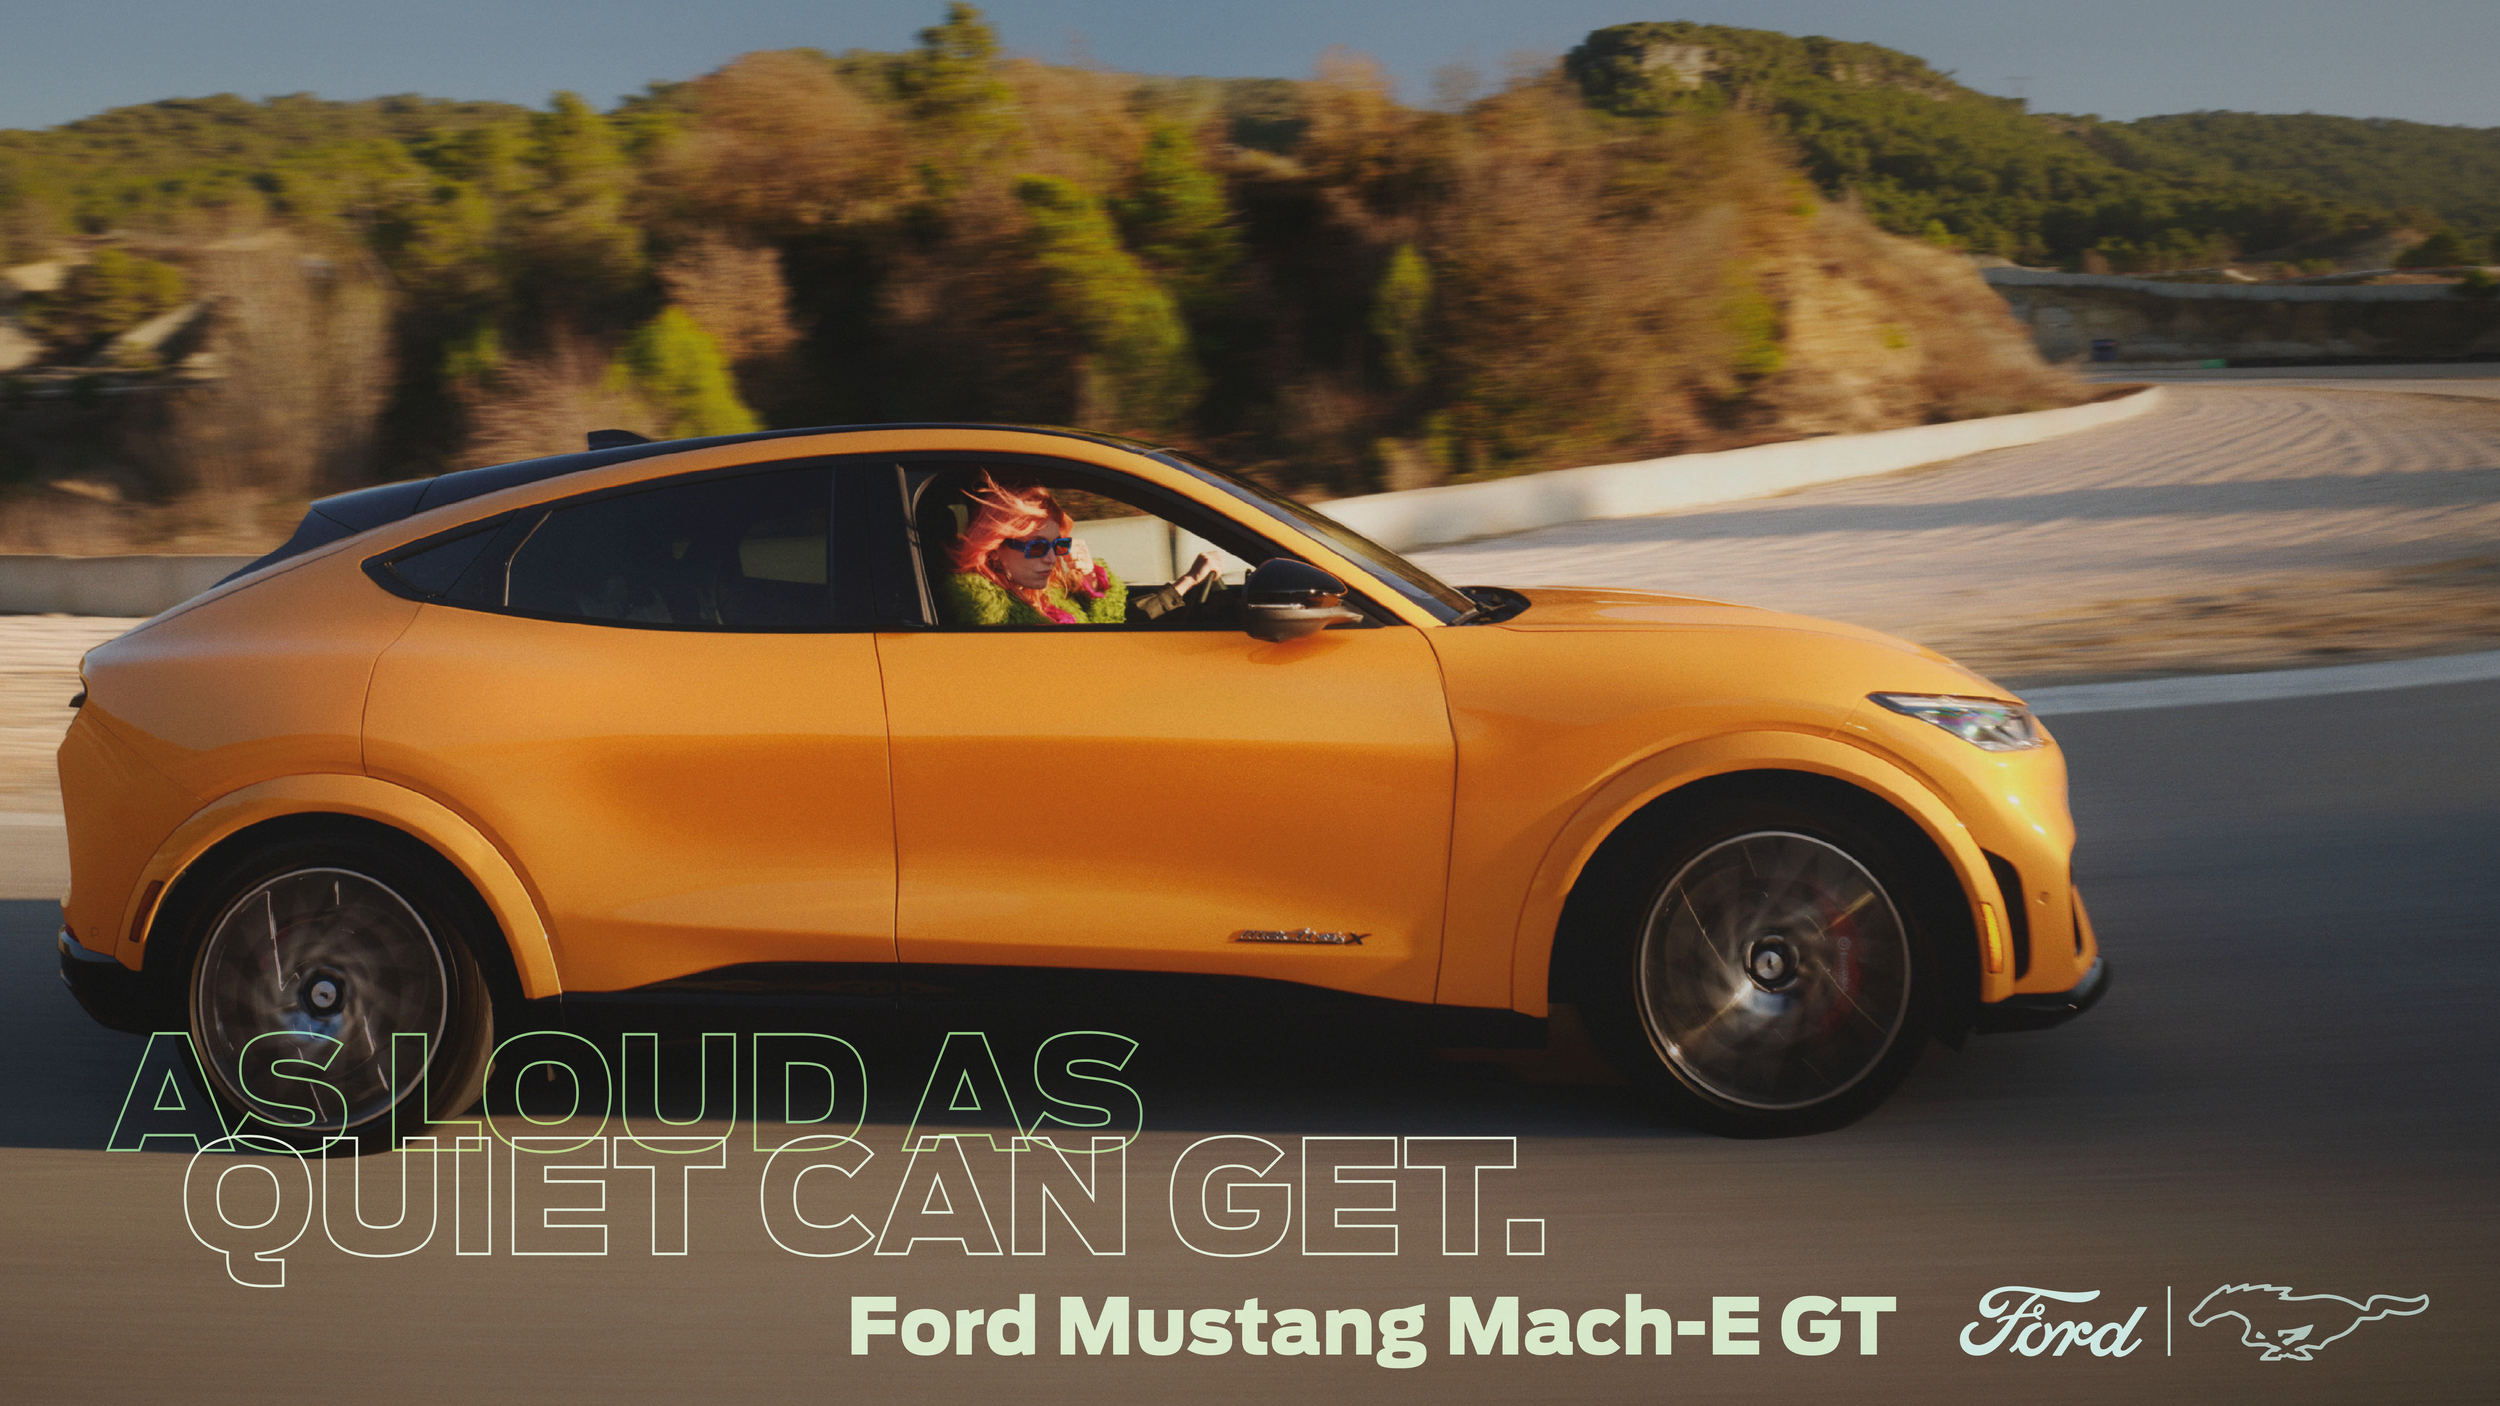 FORD-Mustang_Mach-e_GT_Erick-Barrios_Wolfgang-Warzilek2.png